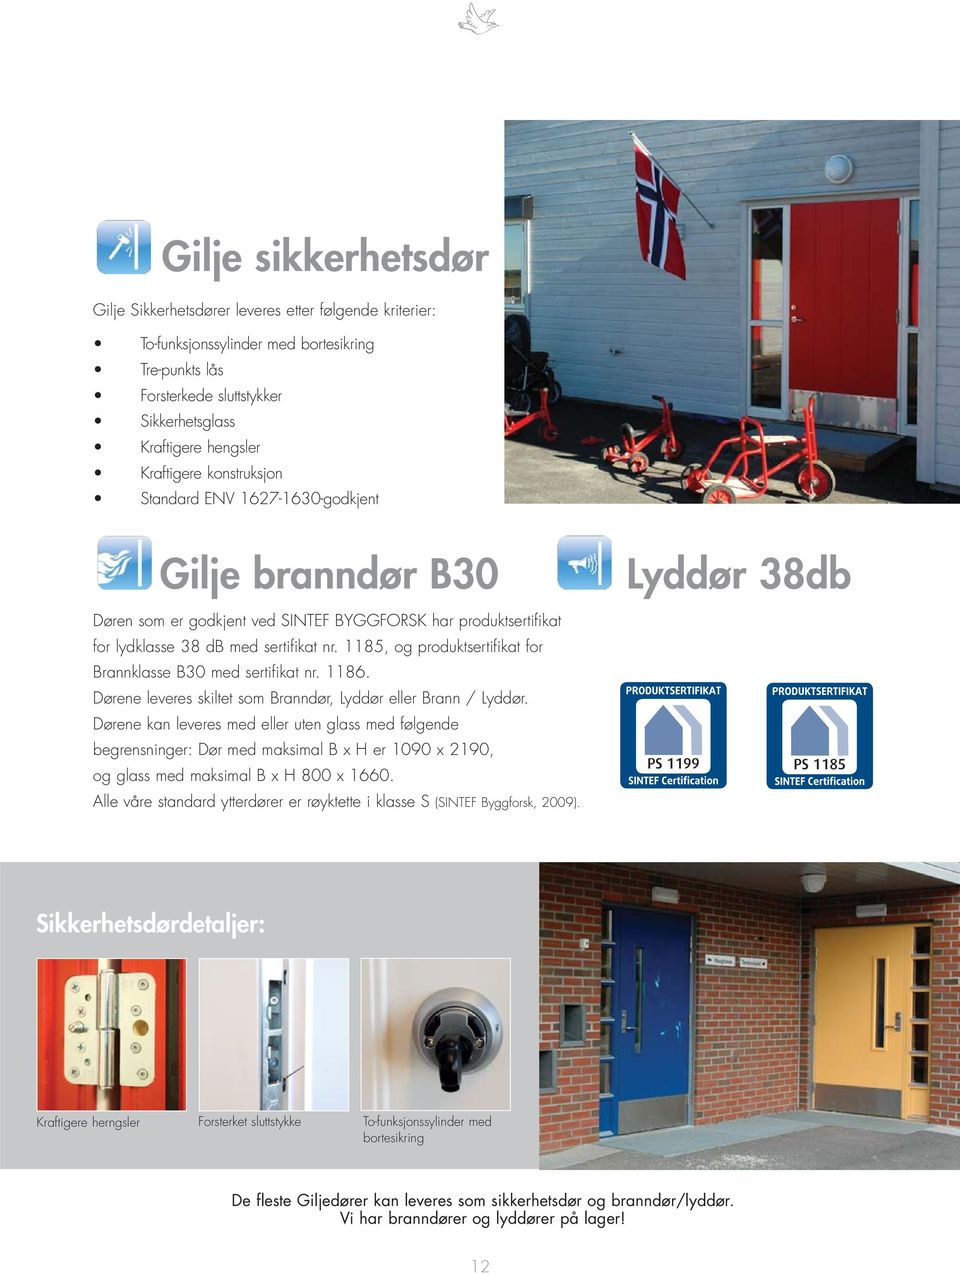 1185, og produktsertifikat for Brannklasse B30 med sertifikat nr. 1186. Dørene leveres skiltet som Branndør, Lyddør eller Brann / Lyddør.